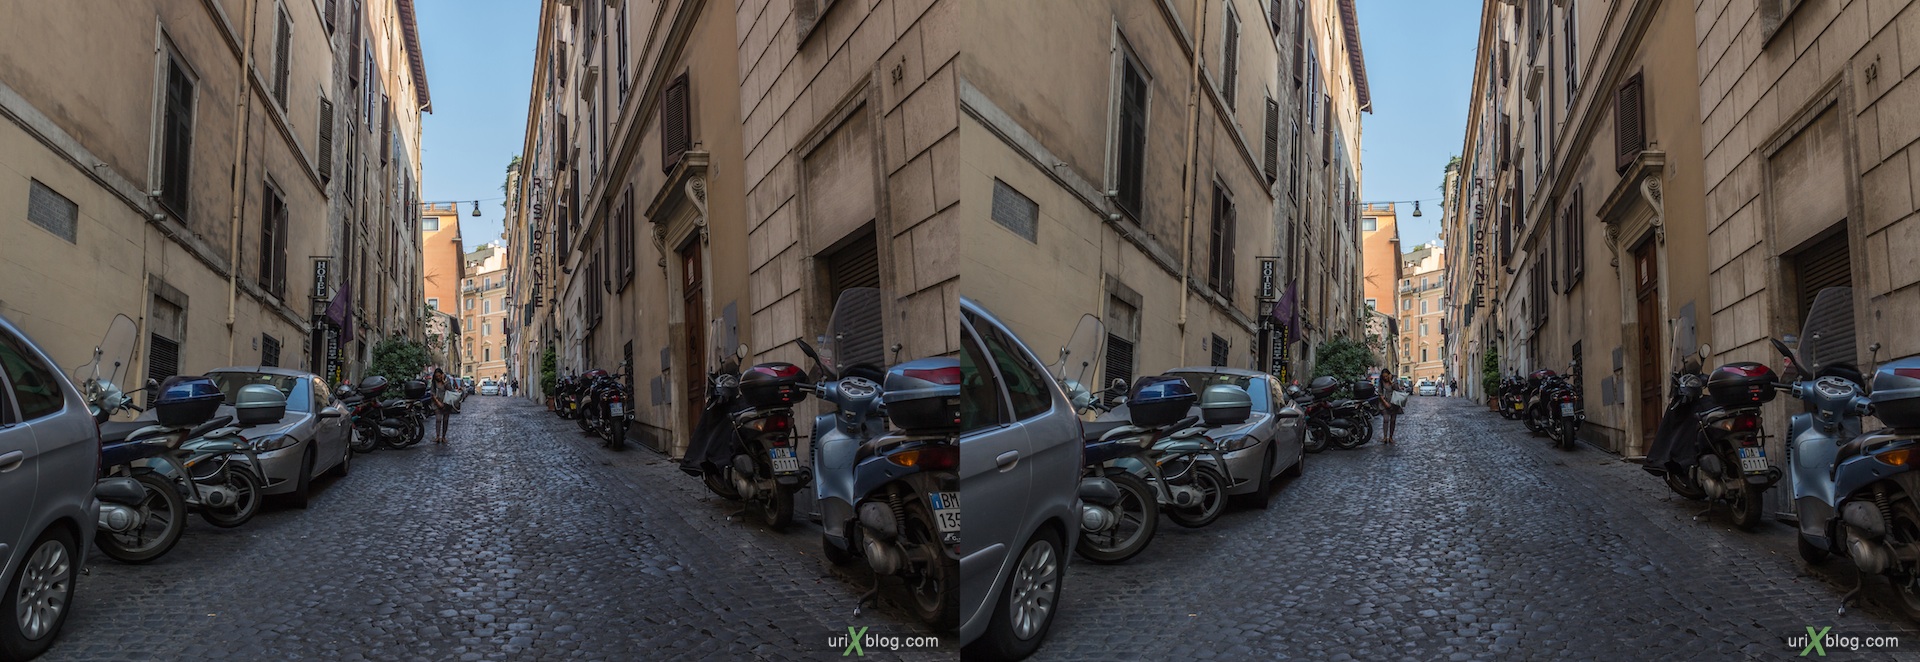 2012, улица Zuchelli, Рим, Италия, осень, 3D, перекрёстные стереопары, стерео, стереопара, стереопары